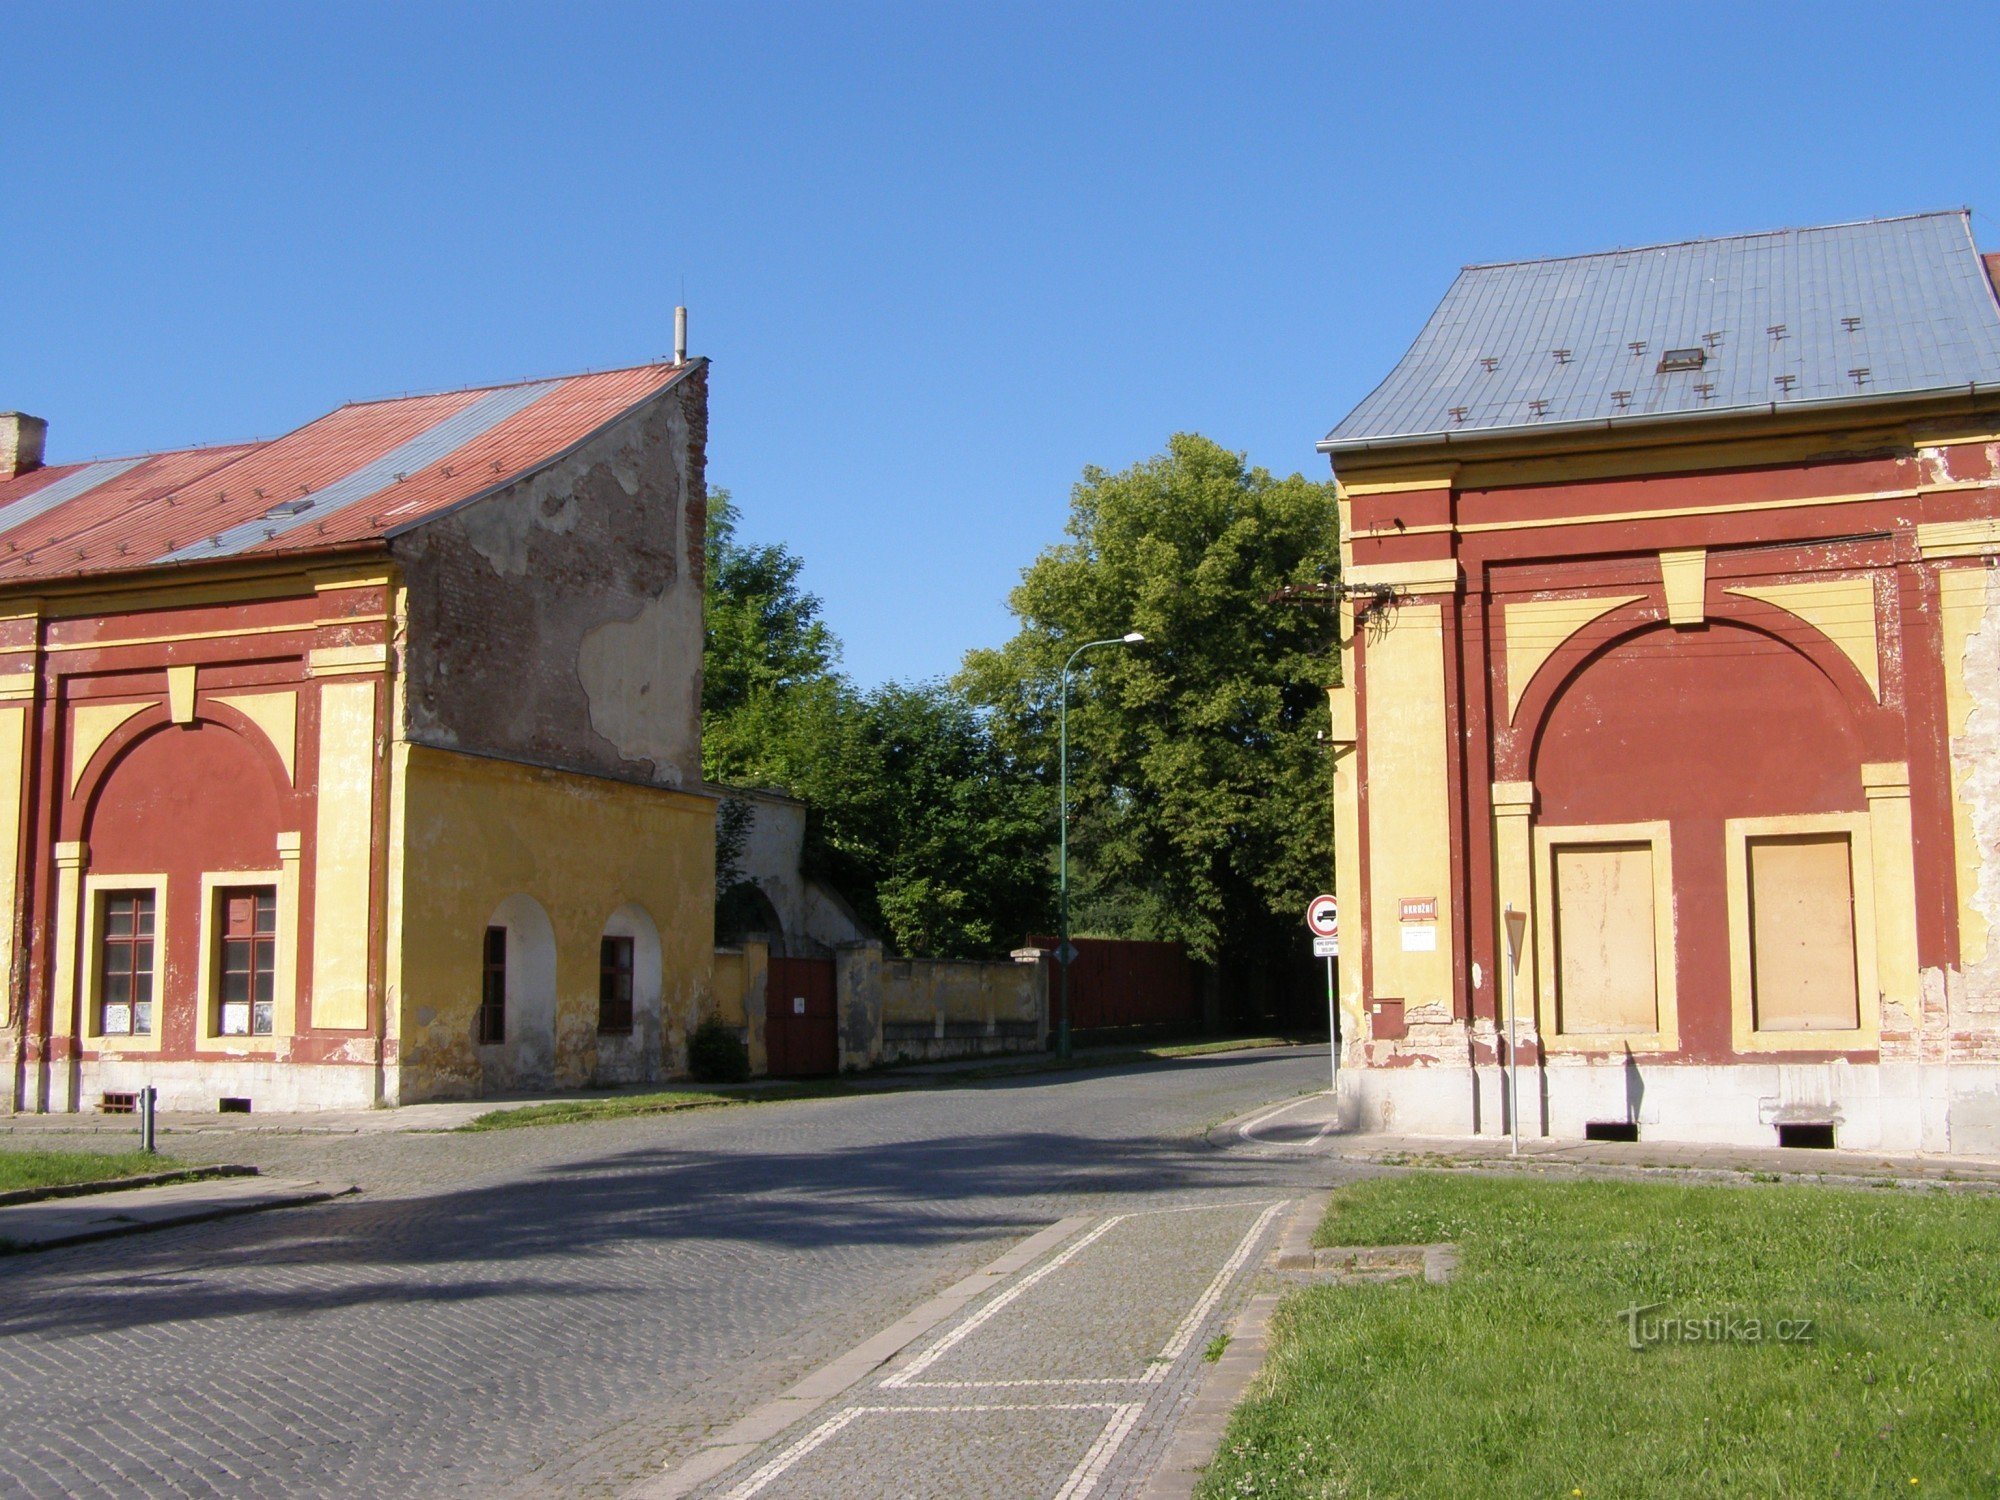 Πύλη Josefov - Hradecká